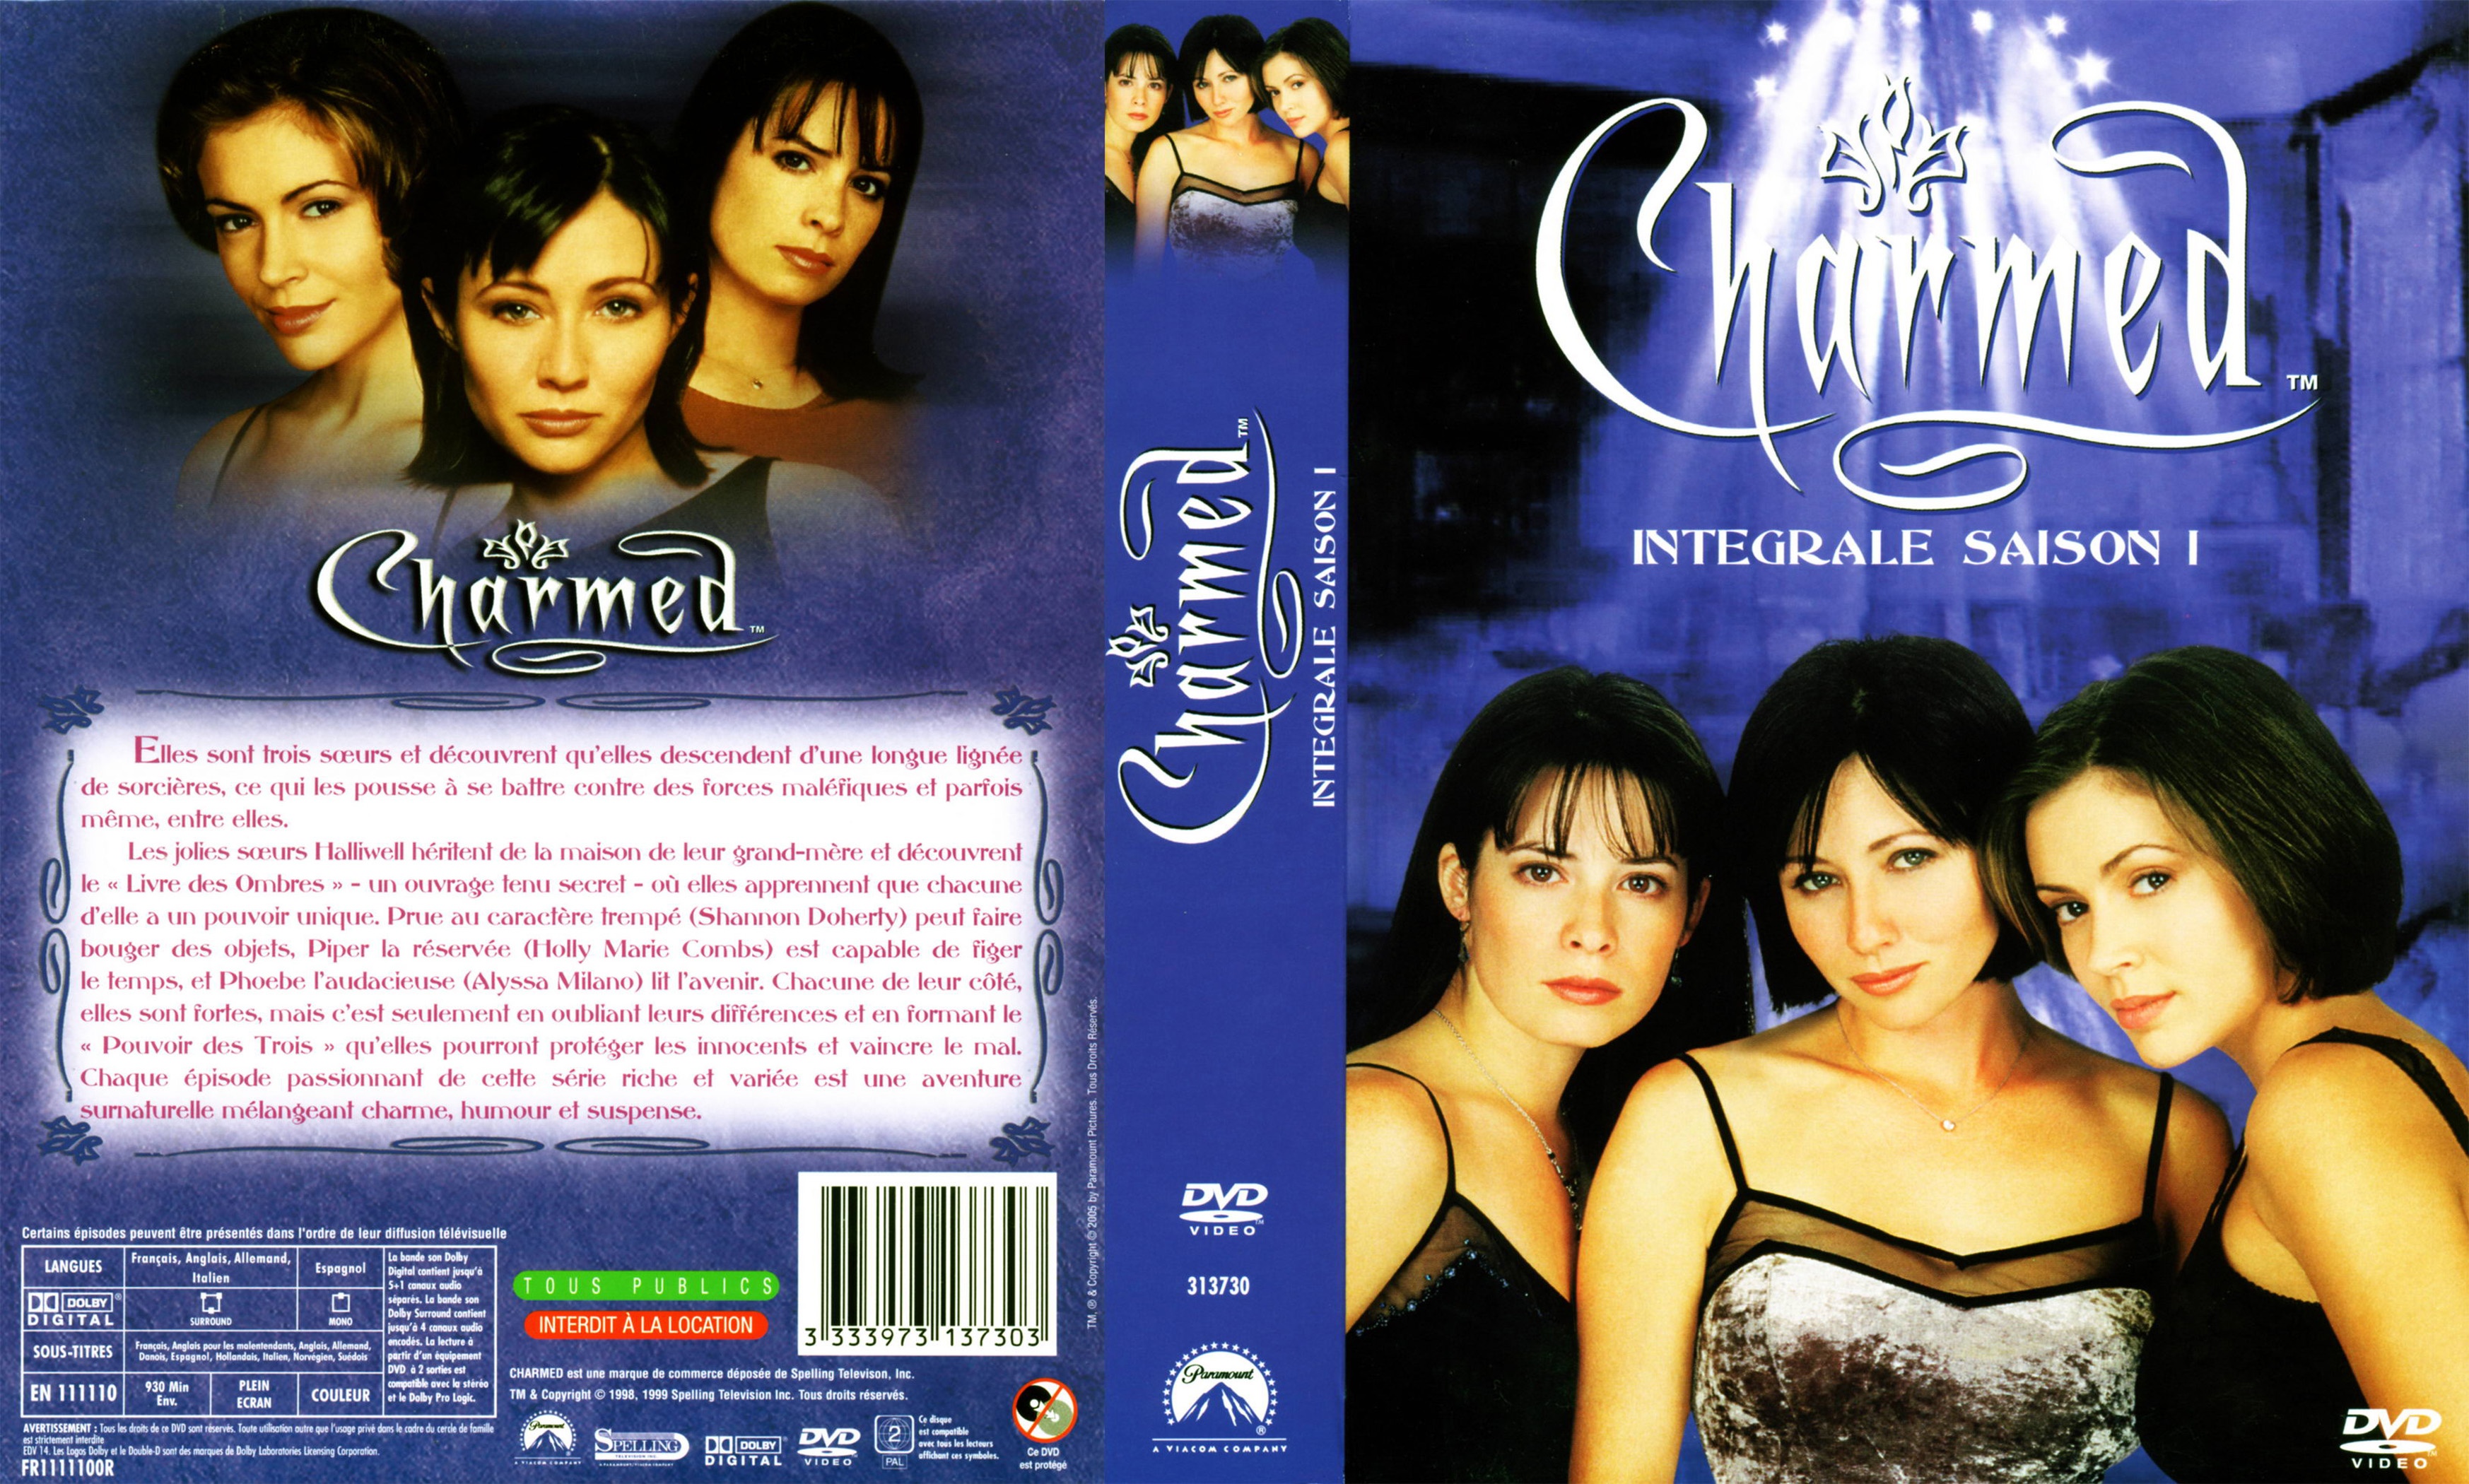 Jaquette DVD Charmed Saison 1 COFFRET v2